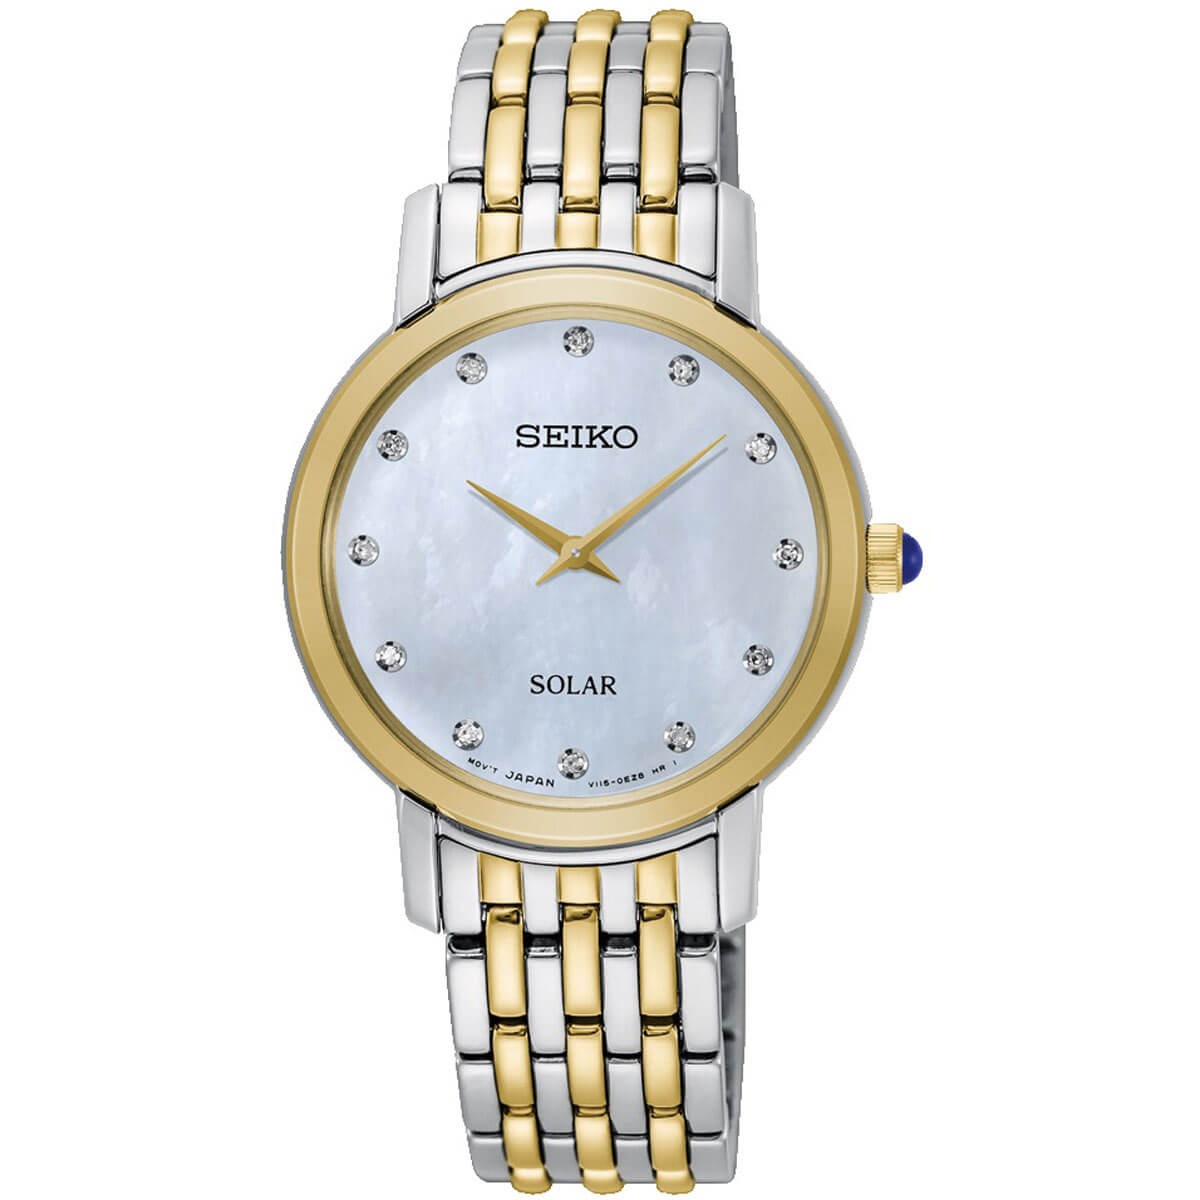 Seiko Women's Diamond Watch - Solar White MOP Dial Two Tone Bracelet